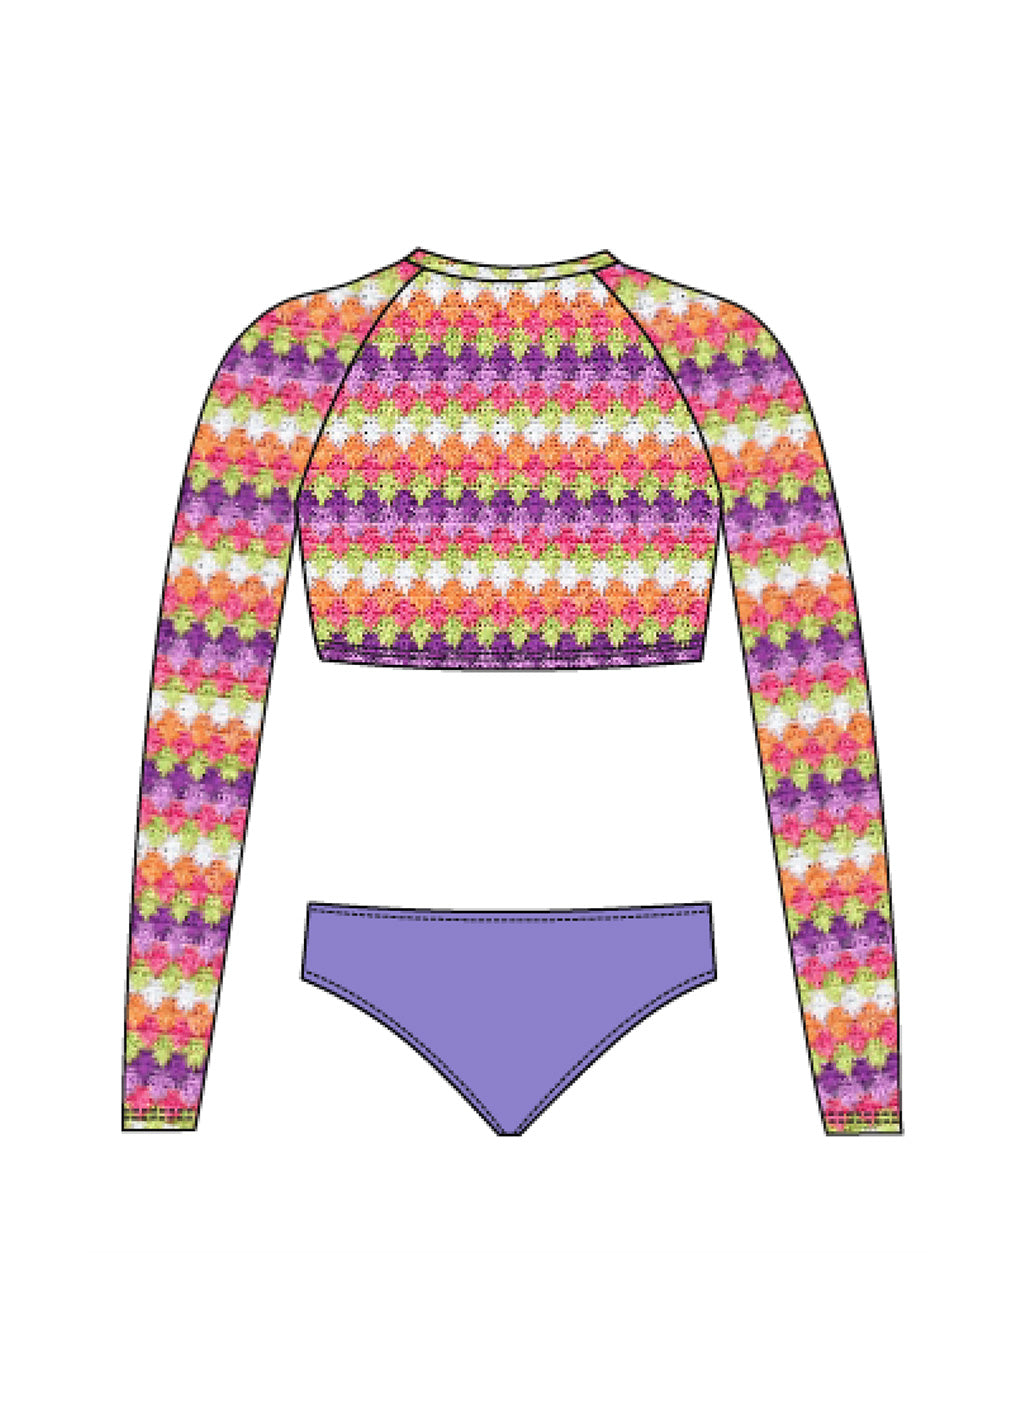 Bikini Crop Top - Crochet